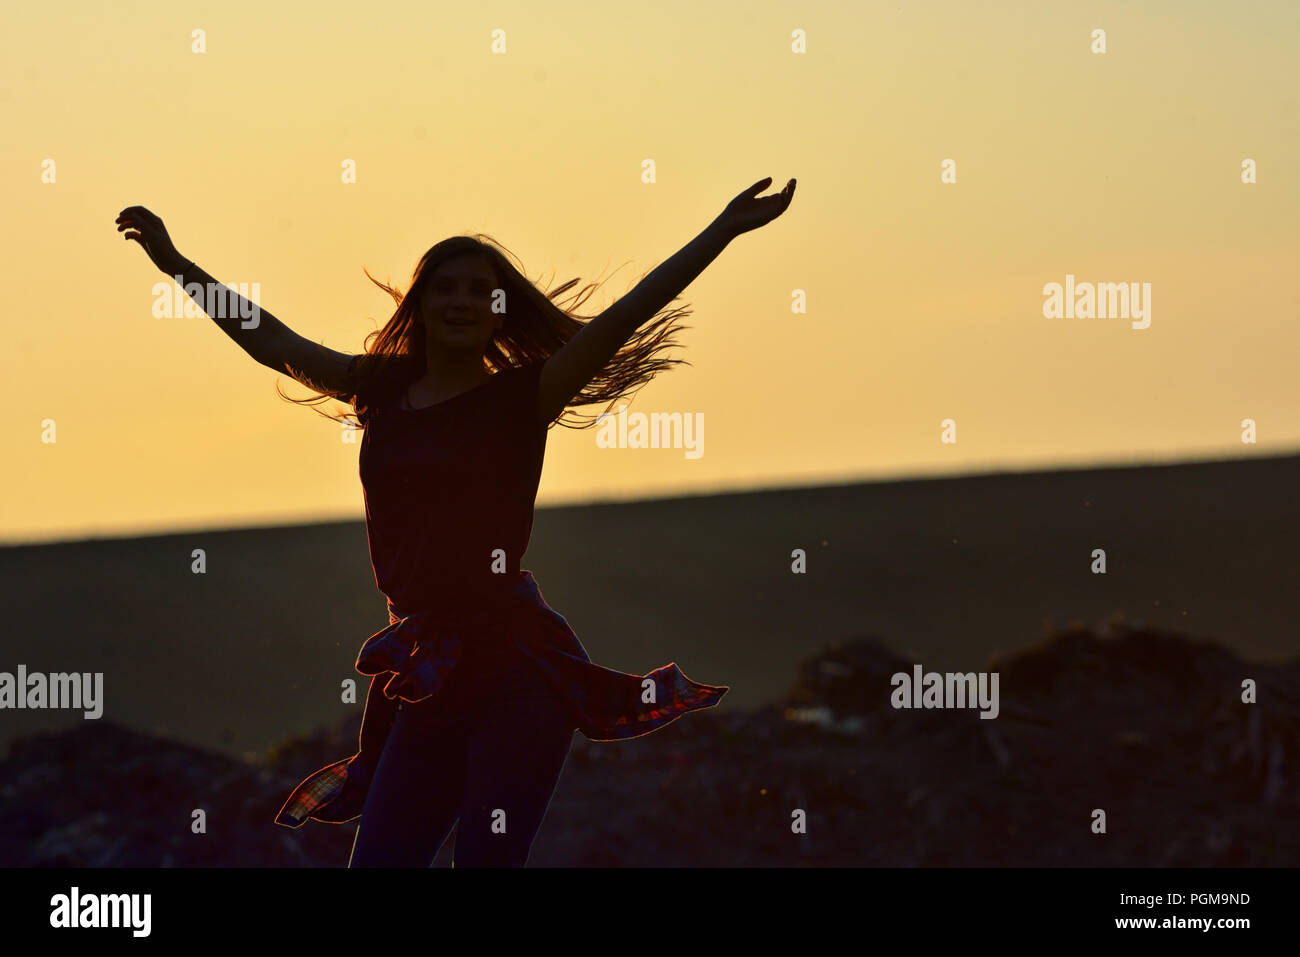 Teen girl jump against beautiful sunset on field Stock Photo